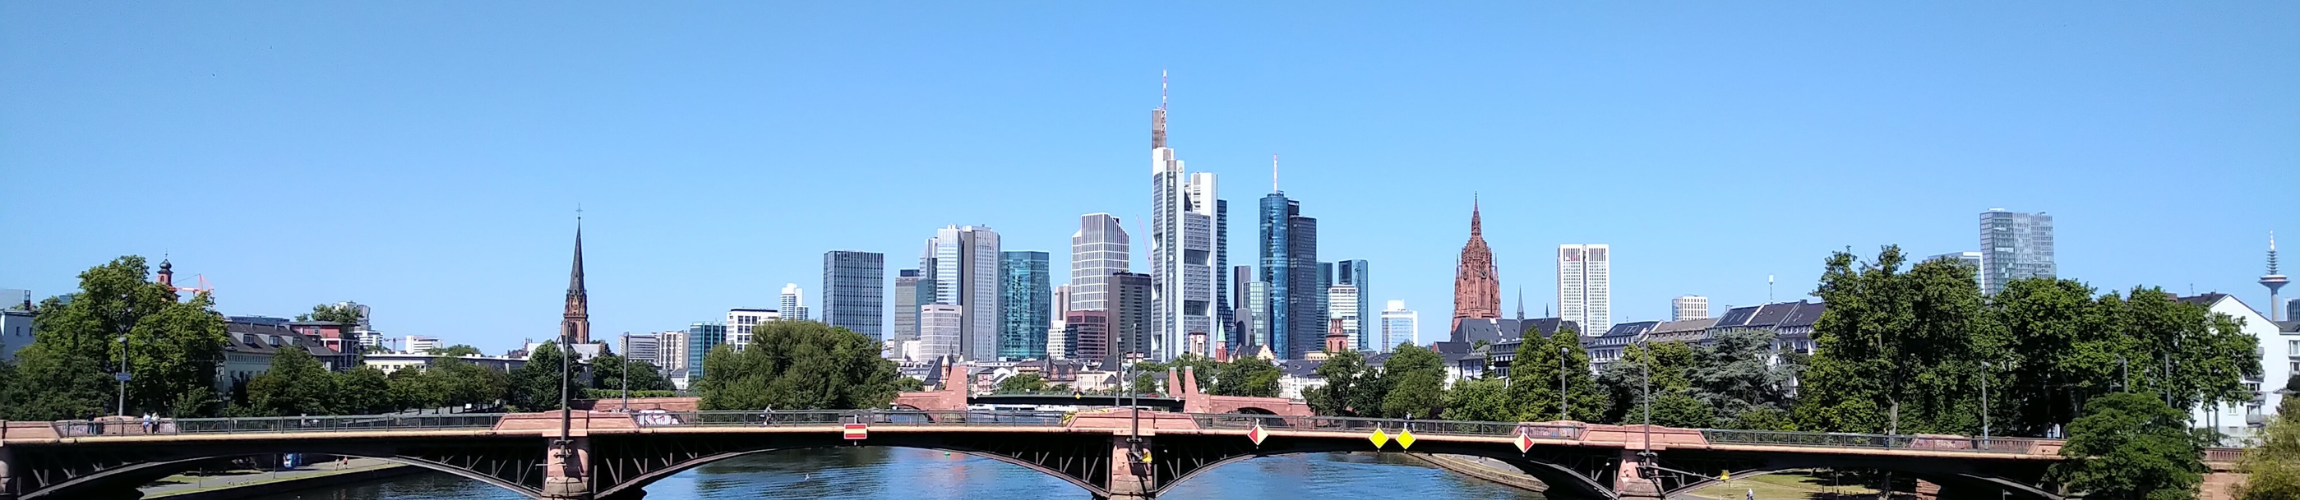 Skyline von Frankfurt vom Main aus